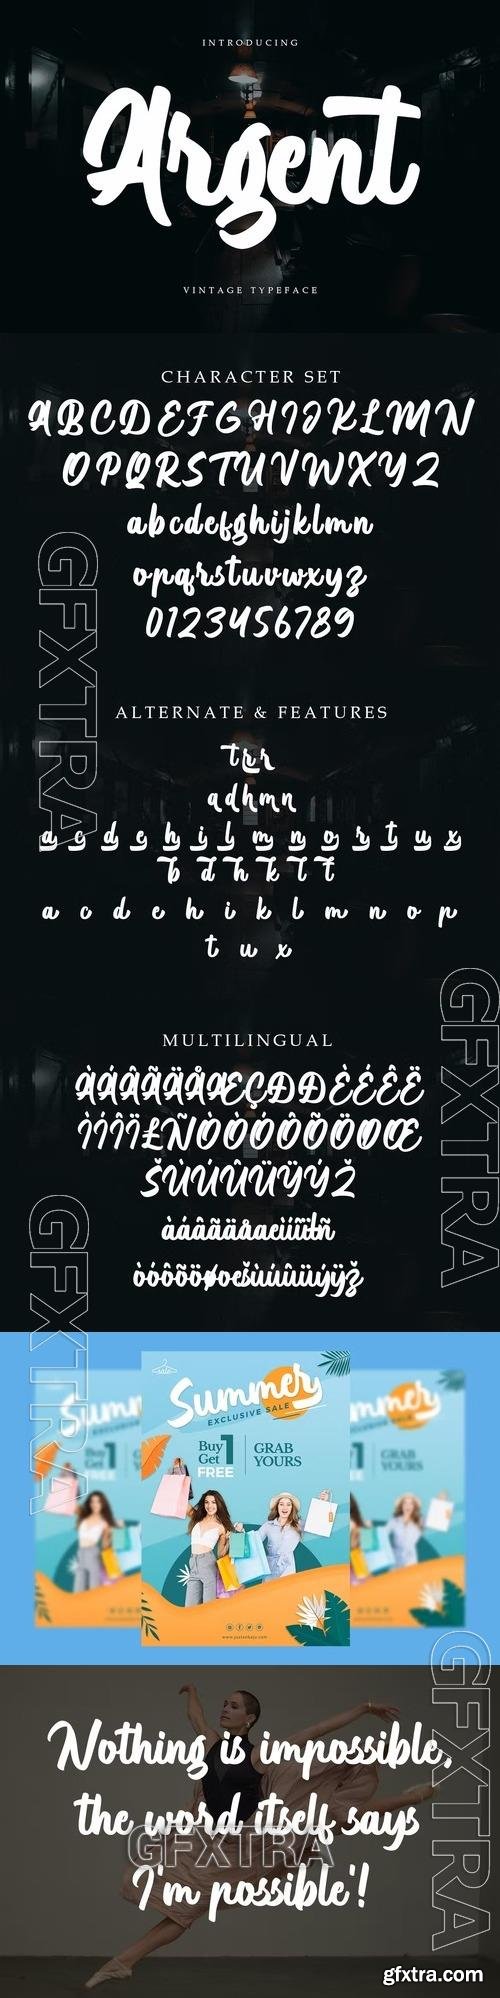 Argent - Vintage Typeface Font